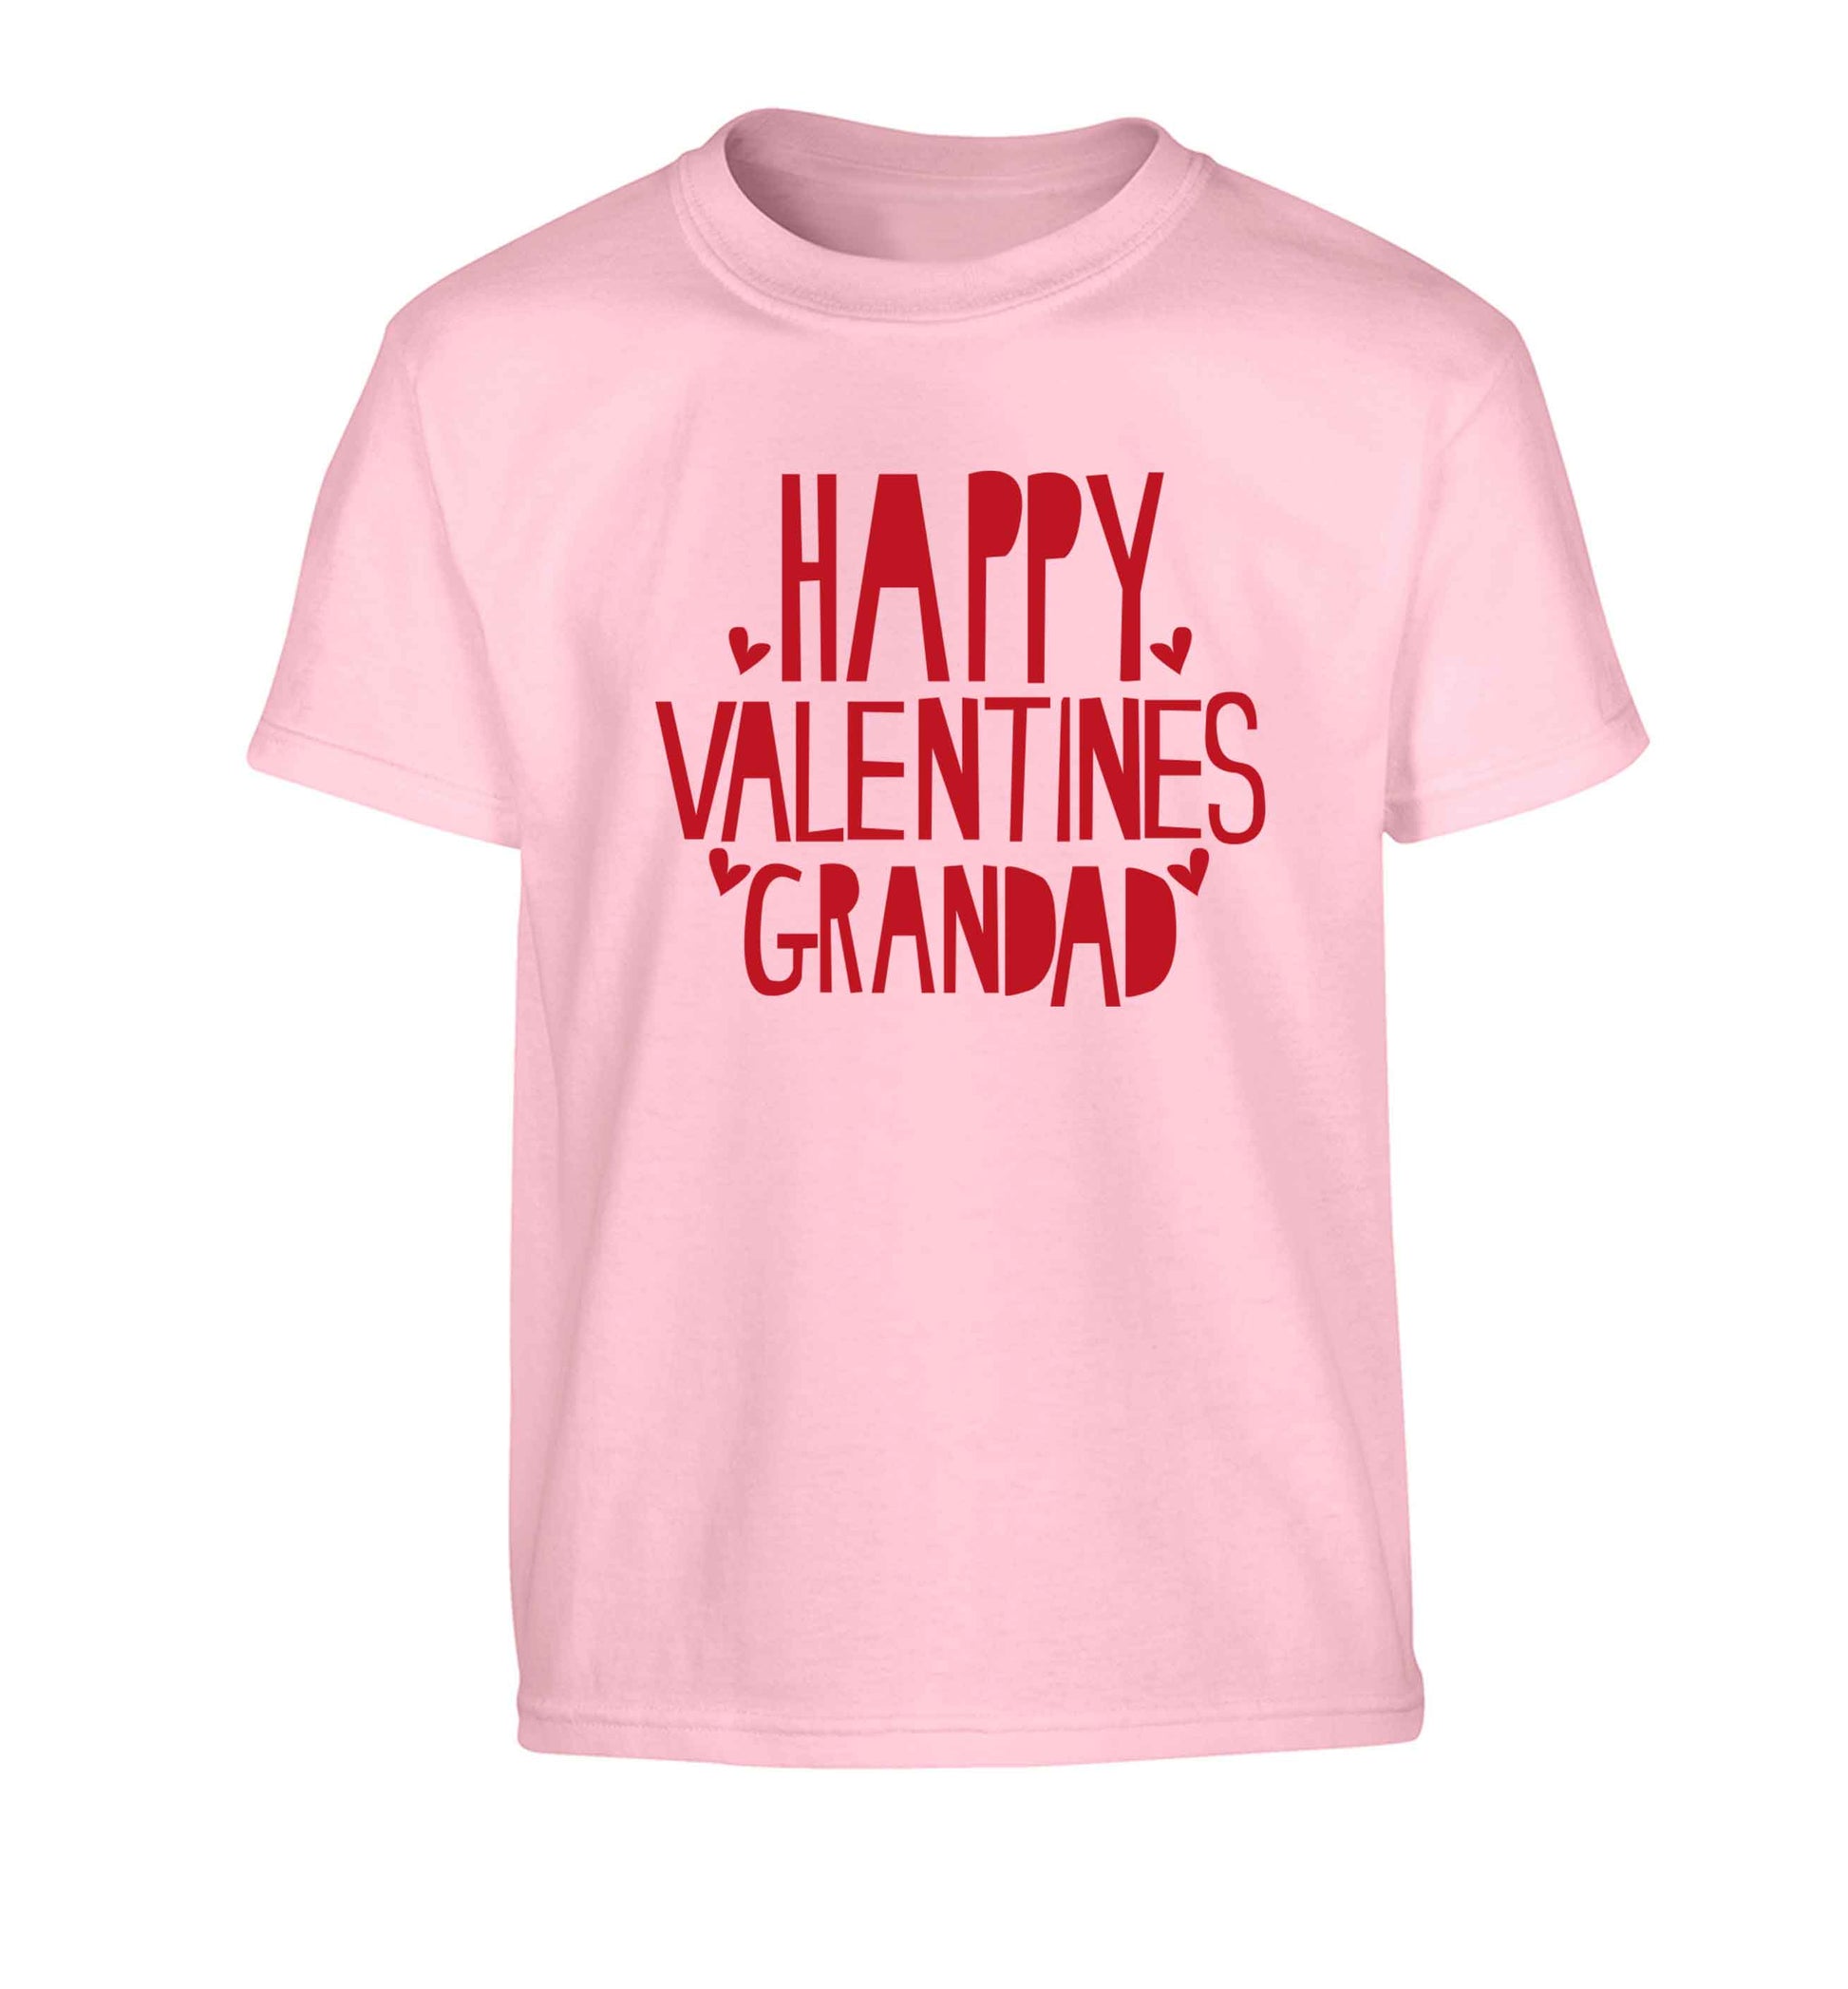 Happy valentines grandad Children's light pink Tshirt 12-13 Years